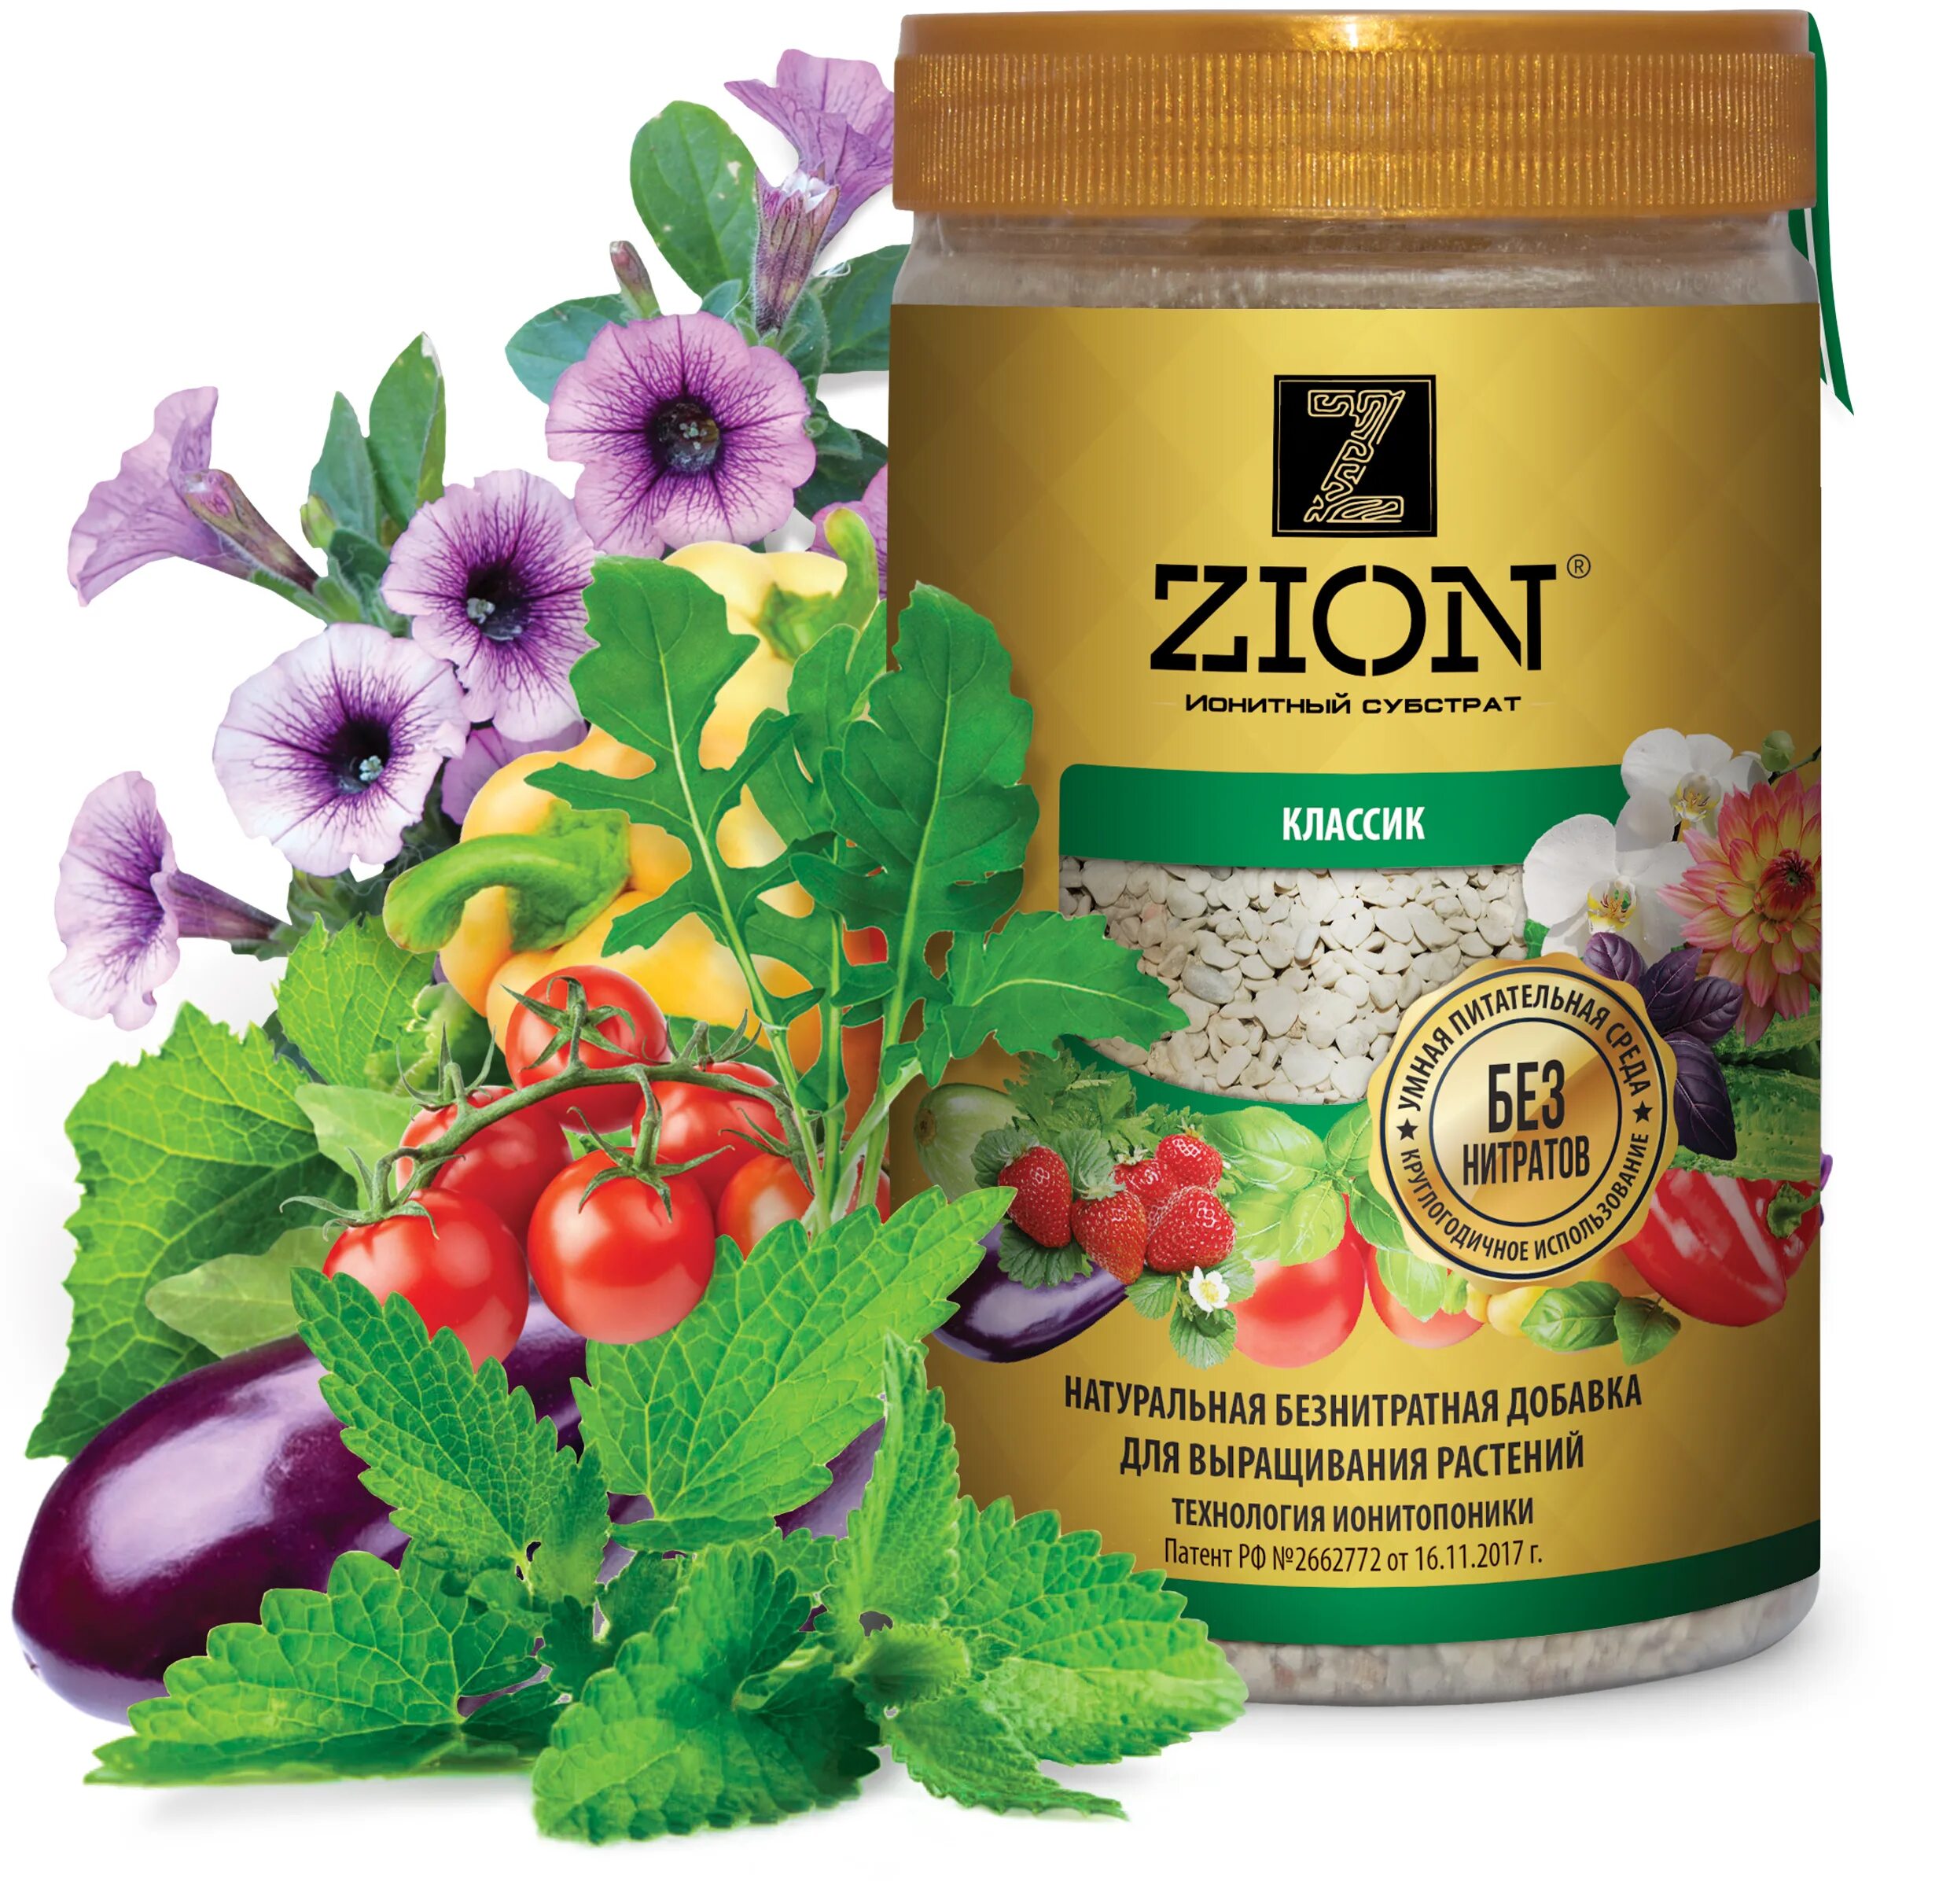 Zion ионитный субстрат. Зион удобрение для цветов. Ионитный субстрат Цион Классик. Удобрение Zion ионитный субстрат для овощей.